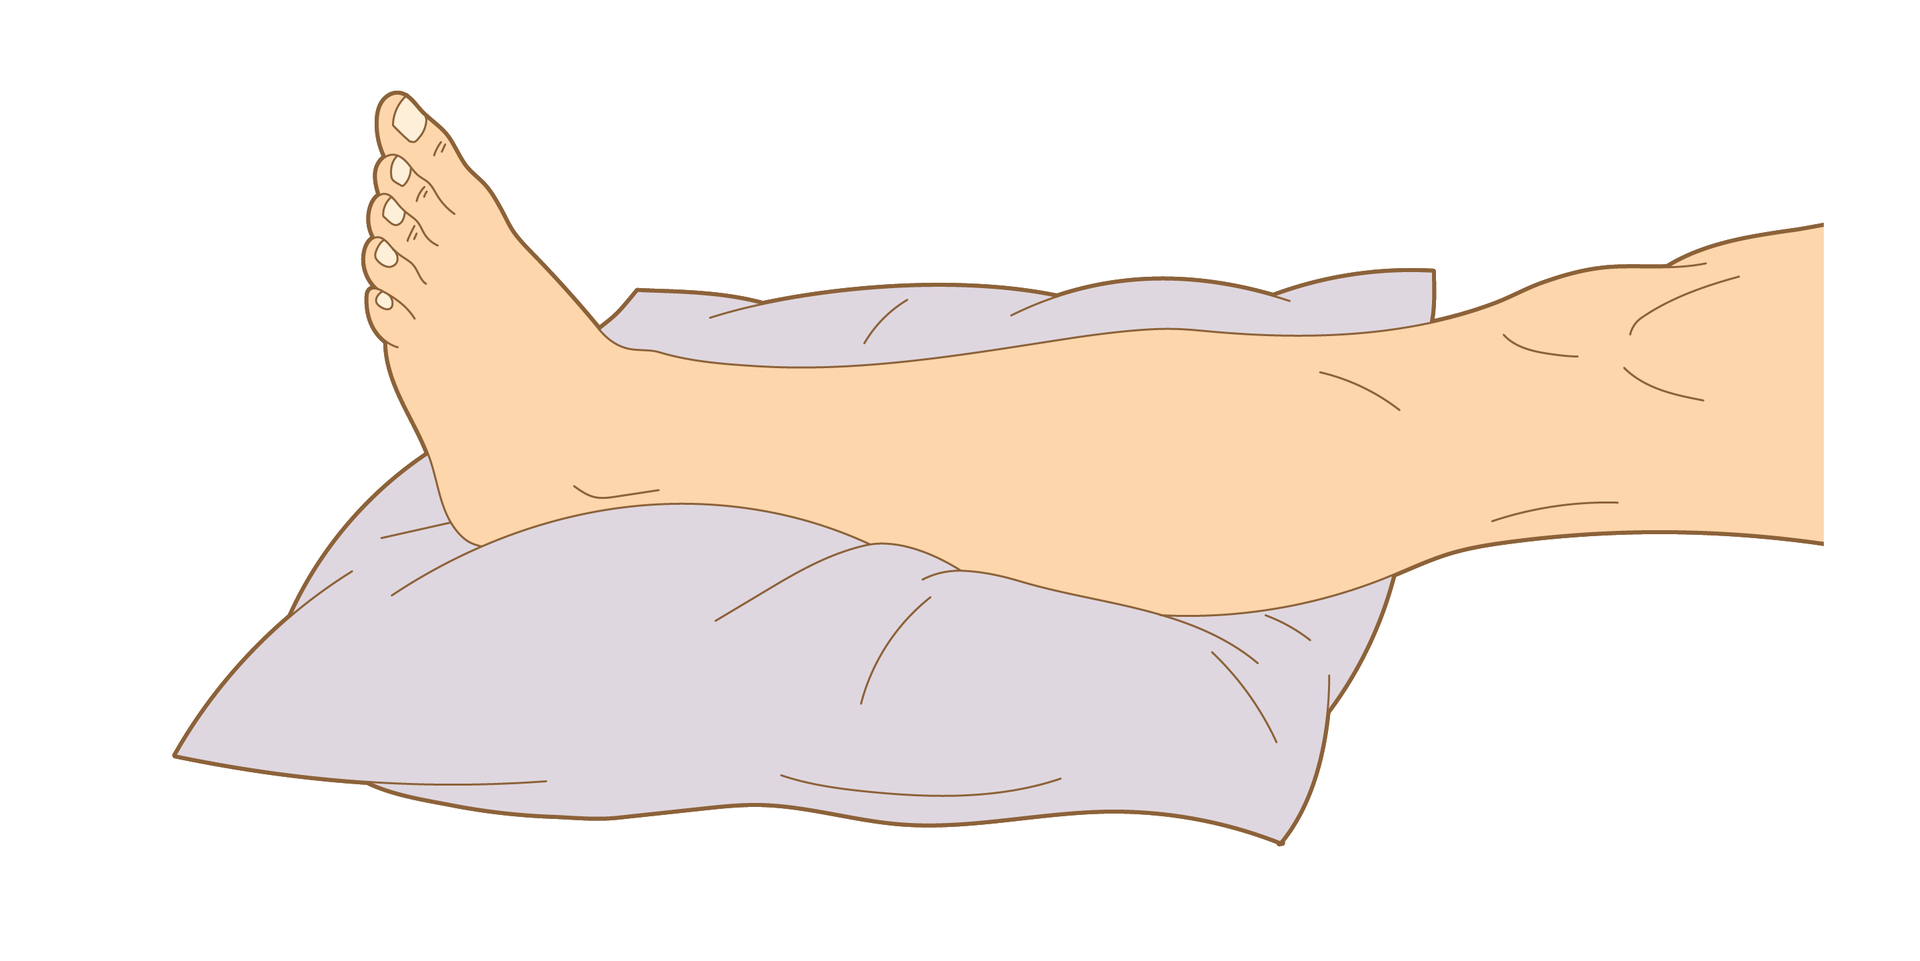 Rysunek czwarty przedstawia pierwszy etap unieruchamiania jednej nogi za pomocą koca. Na ilustracji lewa noga bez odzieży pokazana od kolana w dół skierowana stopą w lewą stronę. Ułożona poziomo i wsparta stopą i łydką na dużej i płaskiej poduszce.